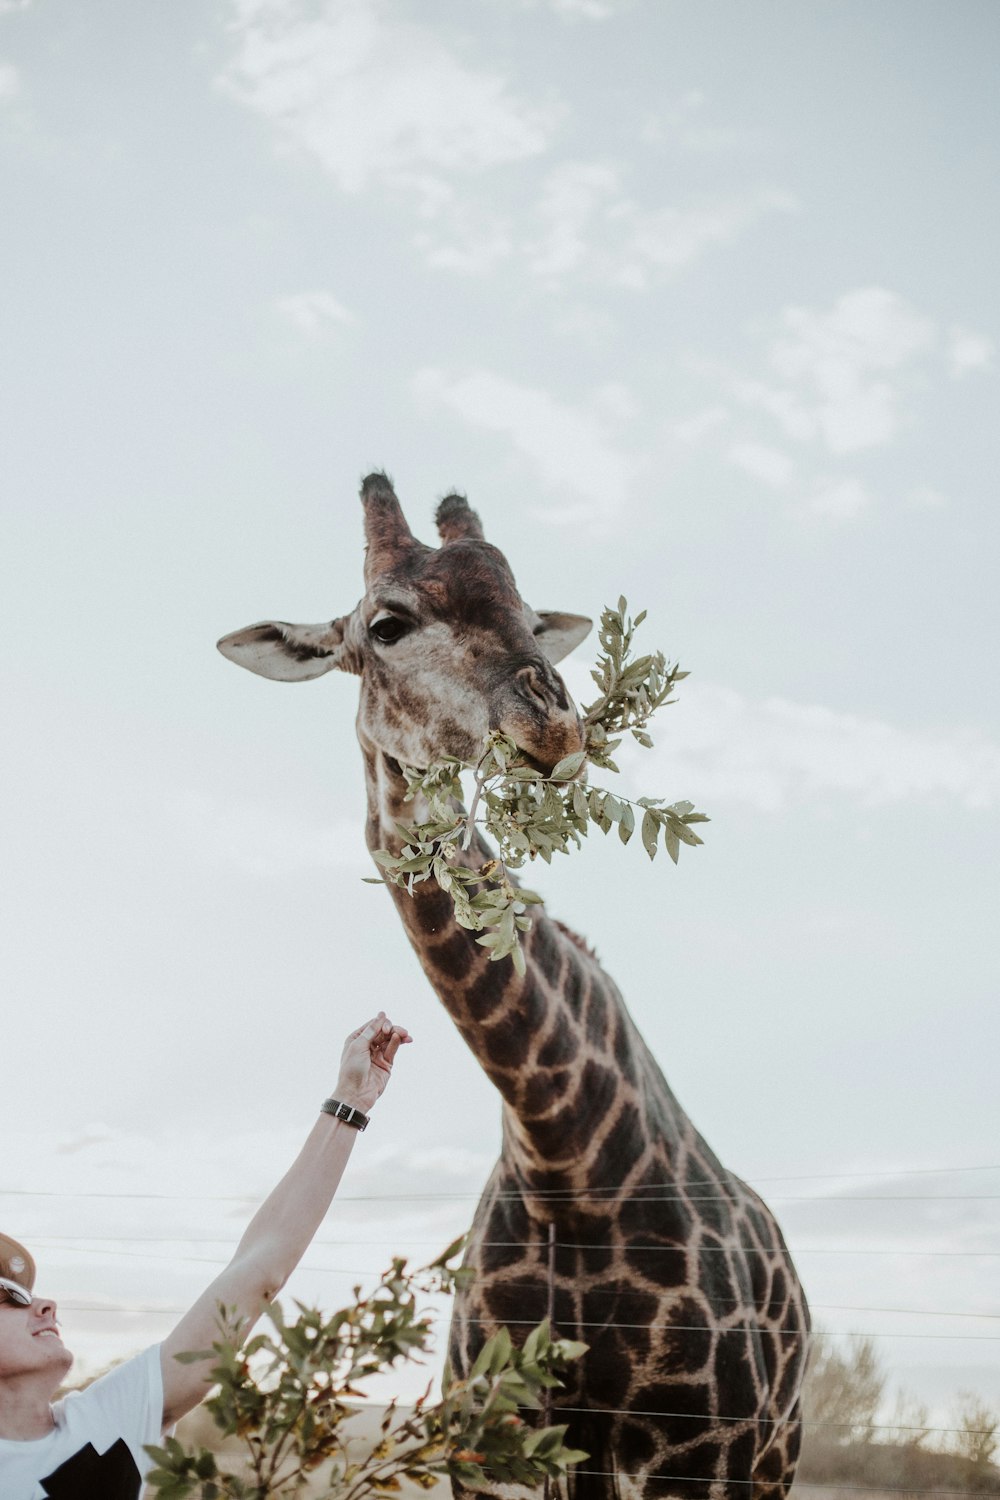 giraffe eating plants